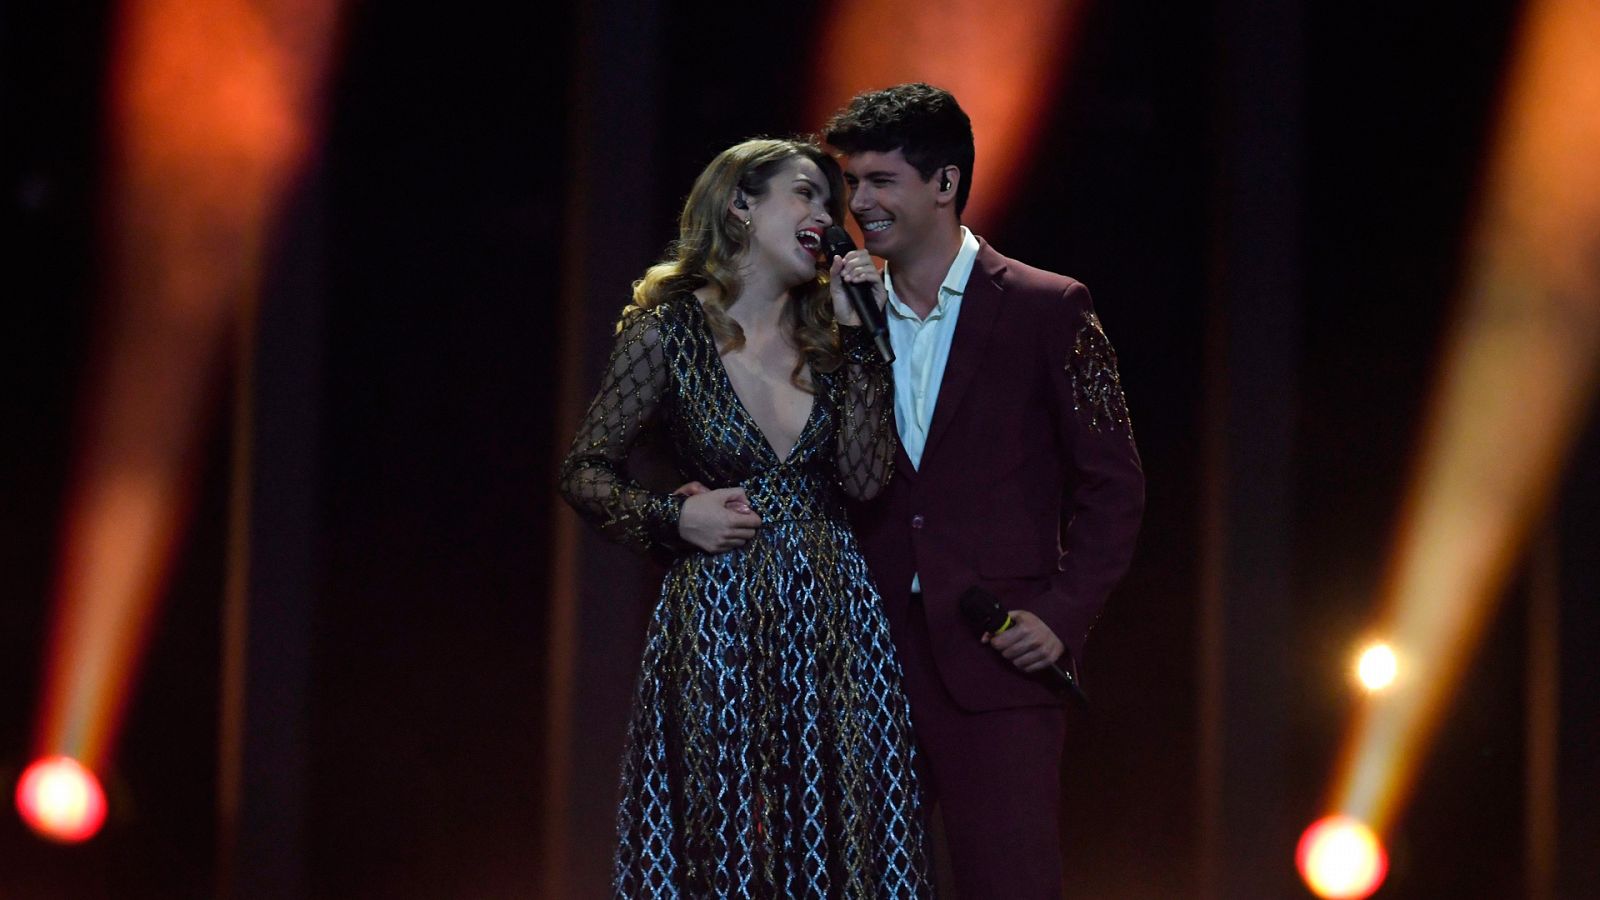 Eurovisión - España: Amaia y Alfred cantan "Tu canción" en la final de Eurovisión 2018